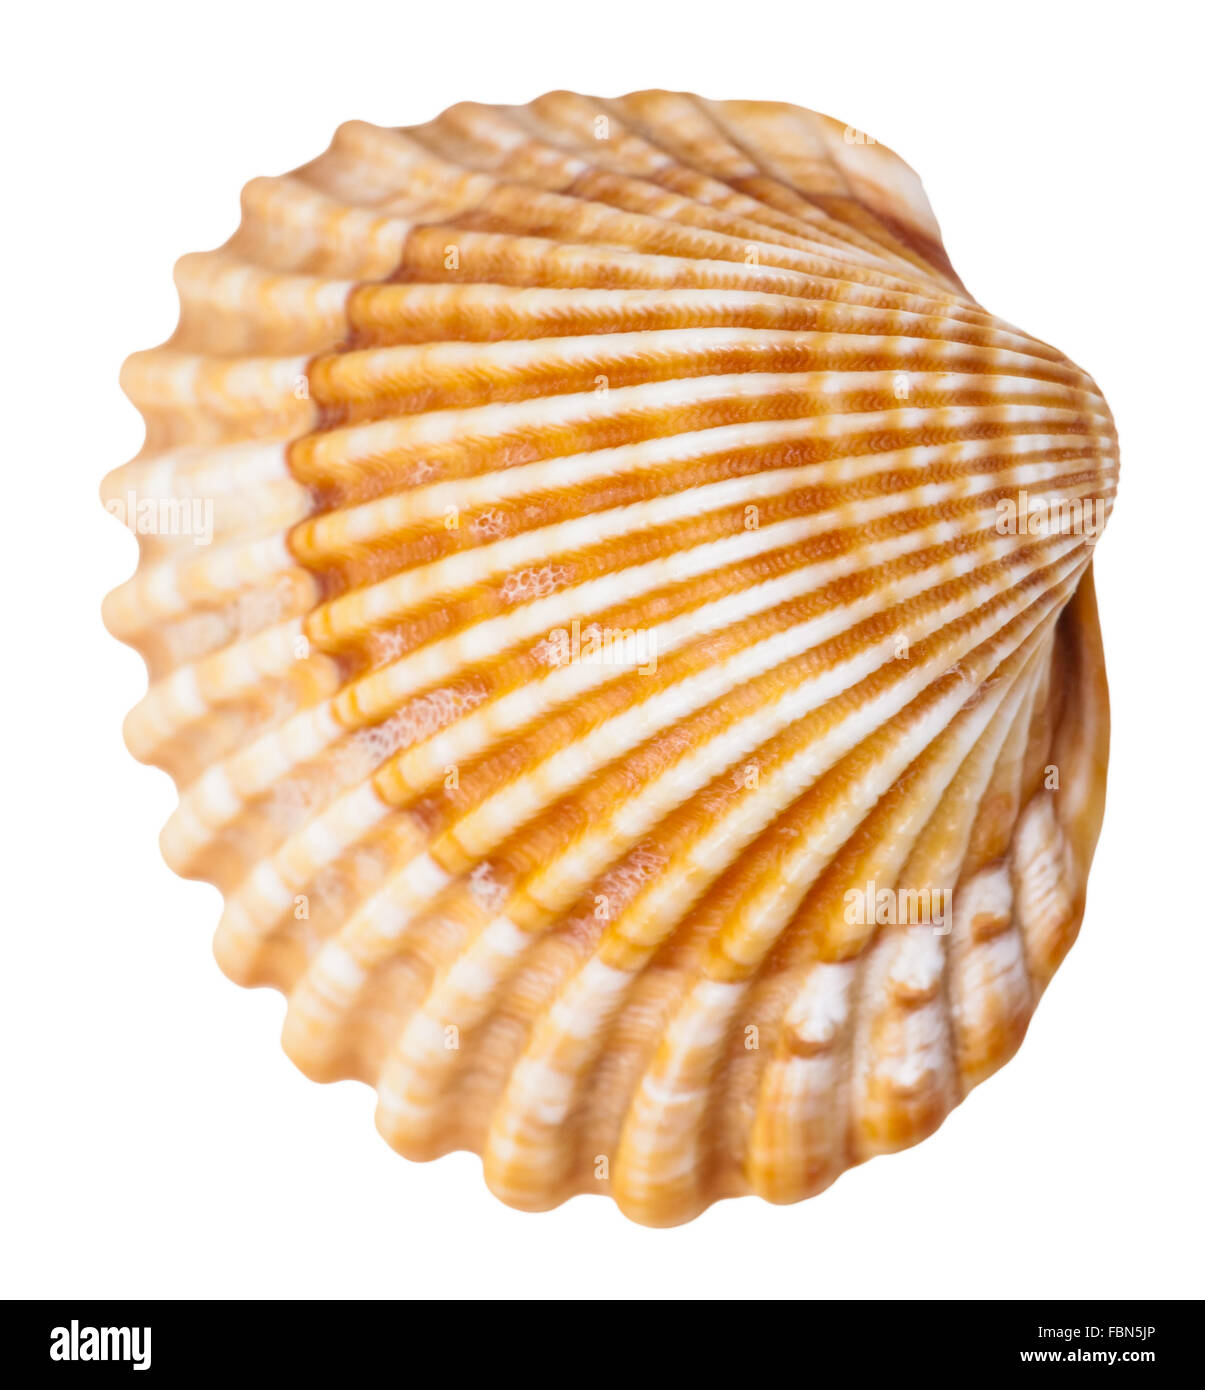 Mollusque clam shell isolé sur fond blanc Banque D'Images